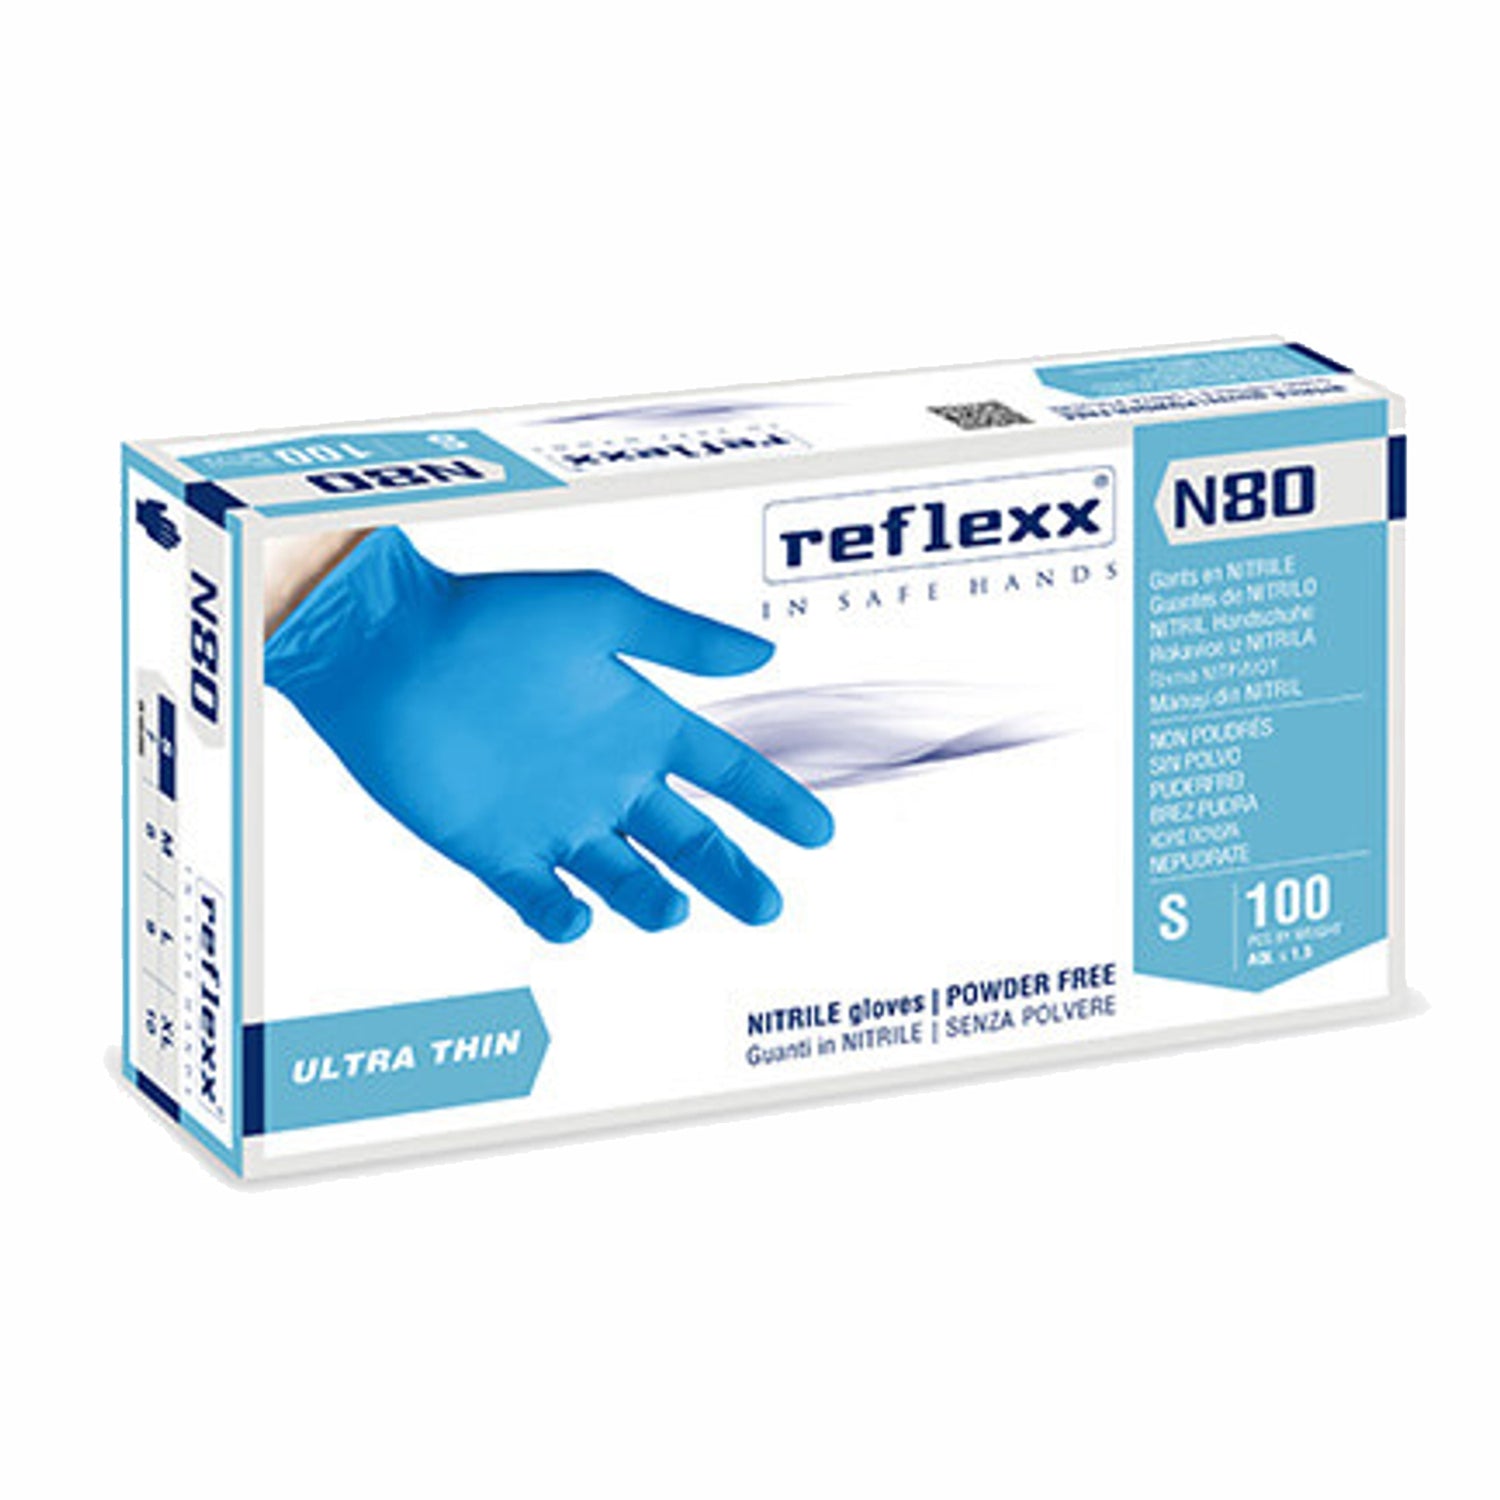 Reflexx N 80 Guanti monouso i nitrile